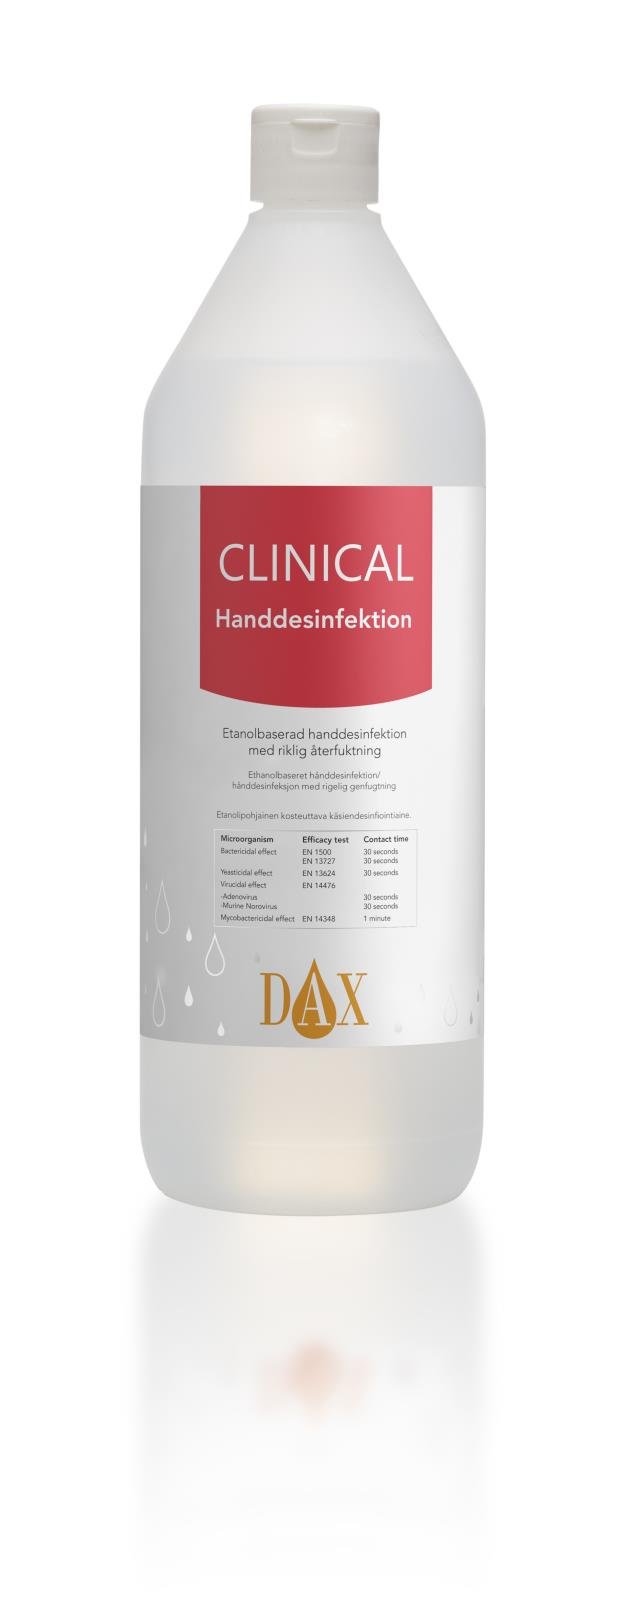 Handdesinfektion DAX Clinical 75 1L